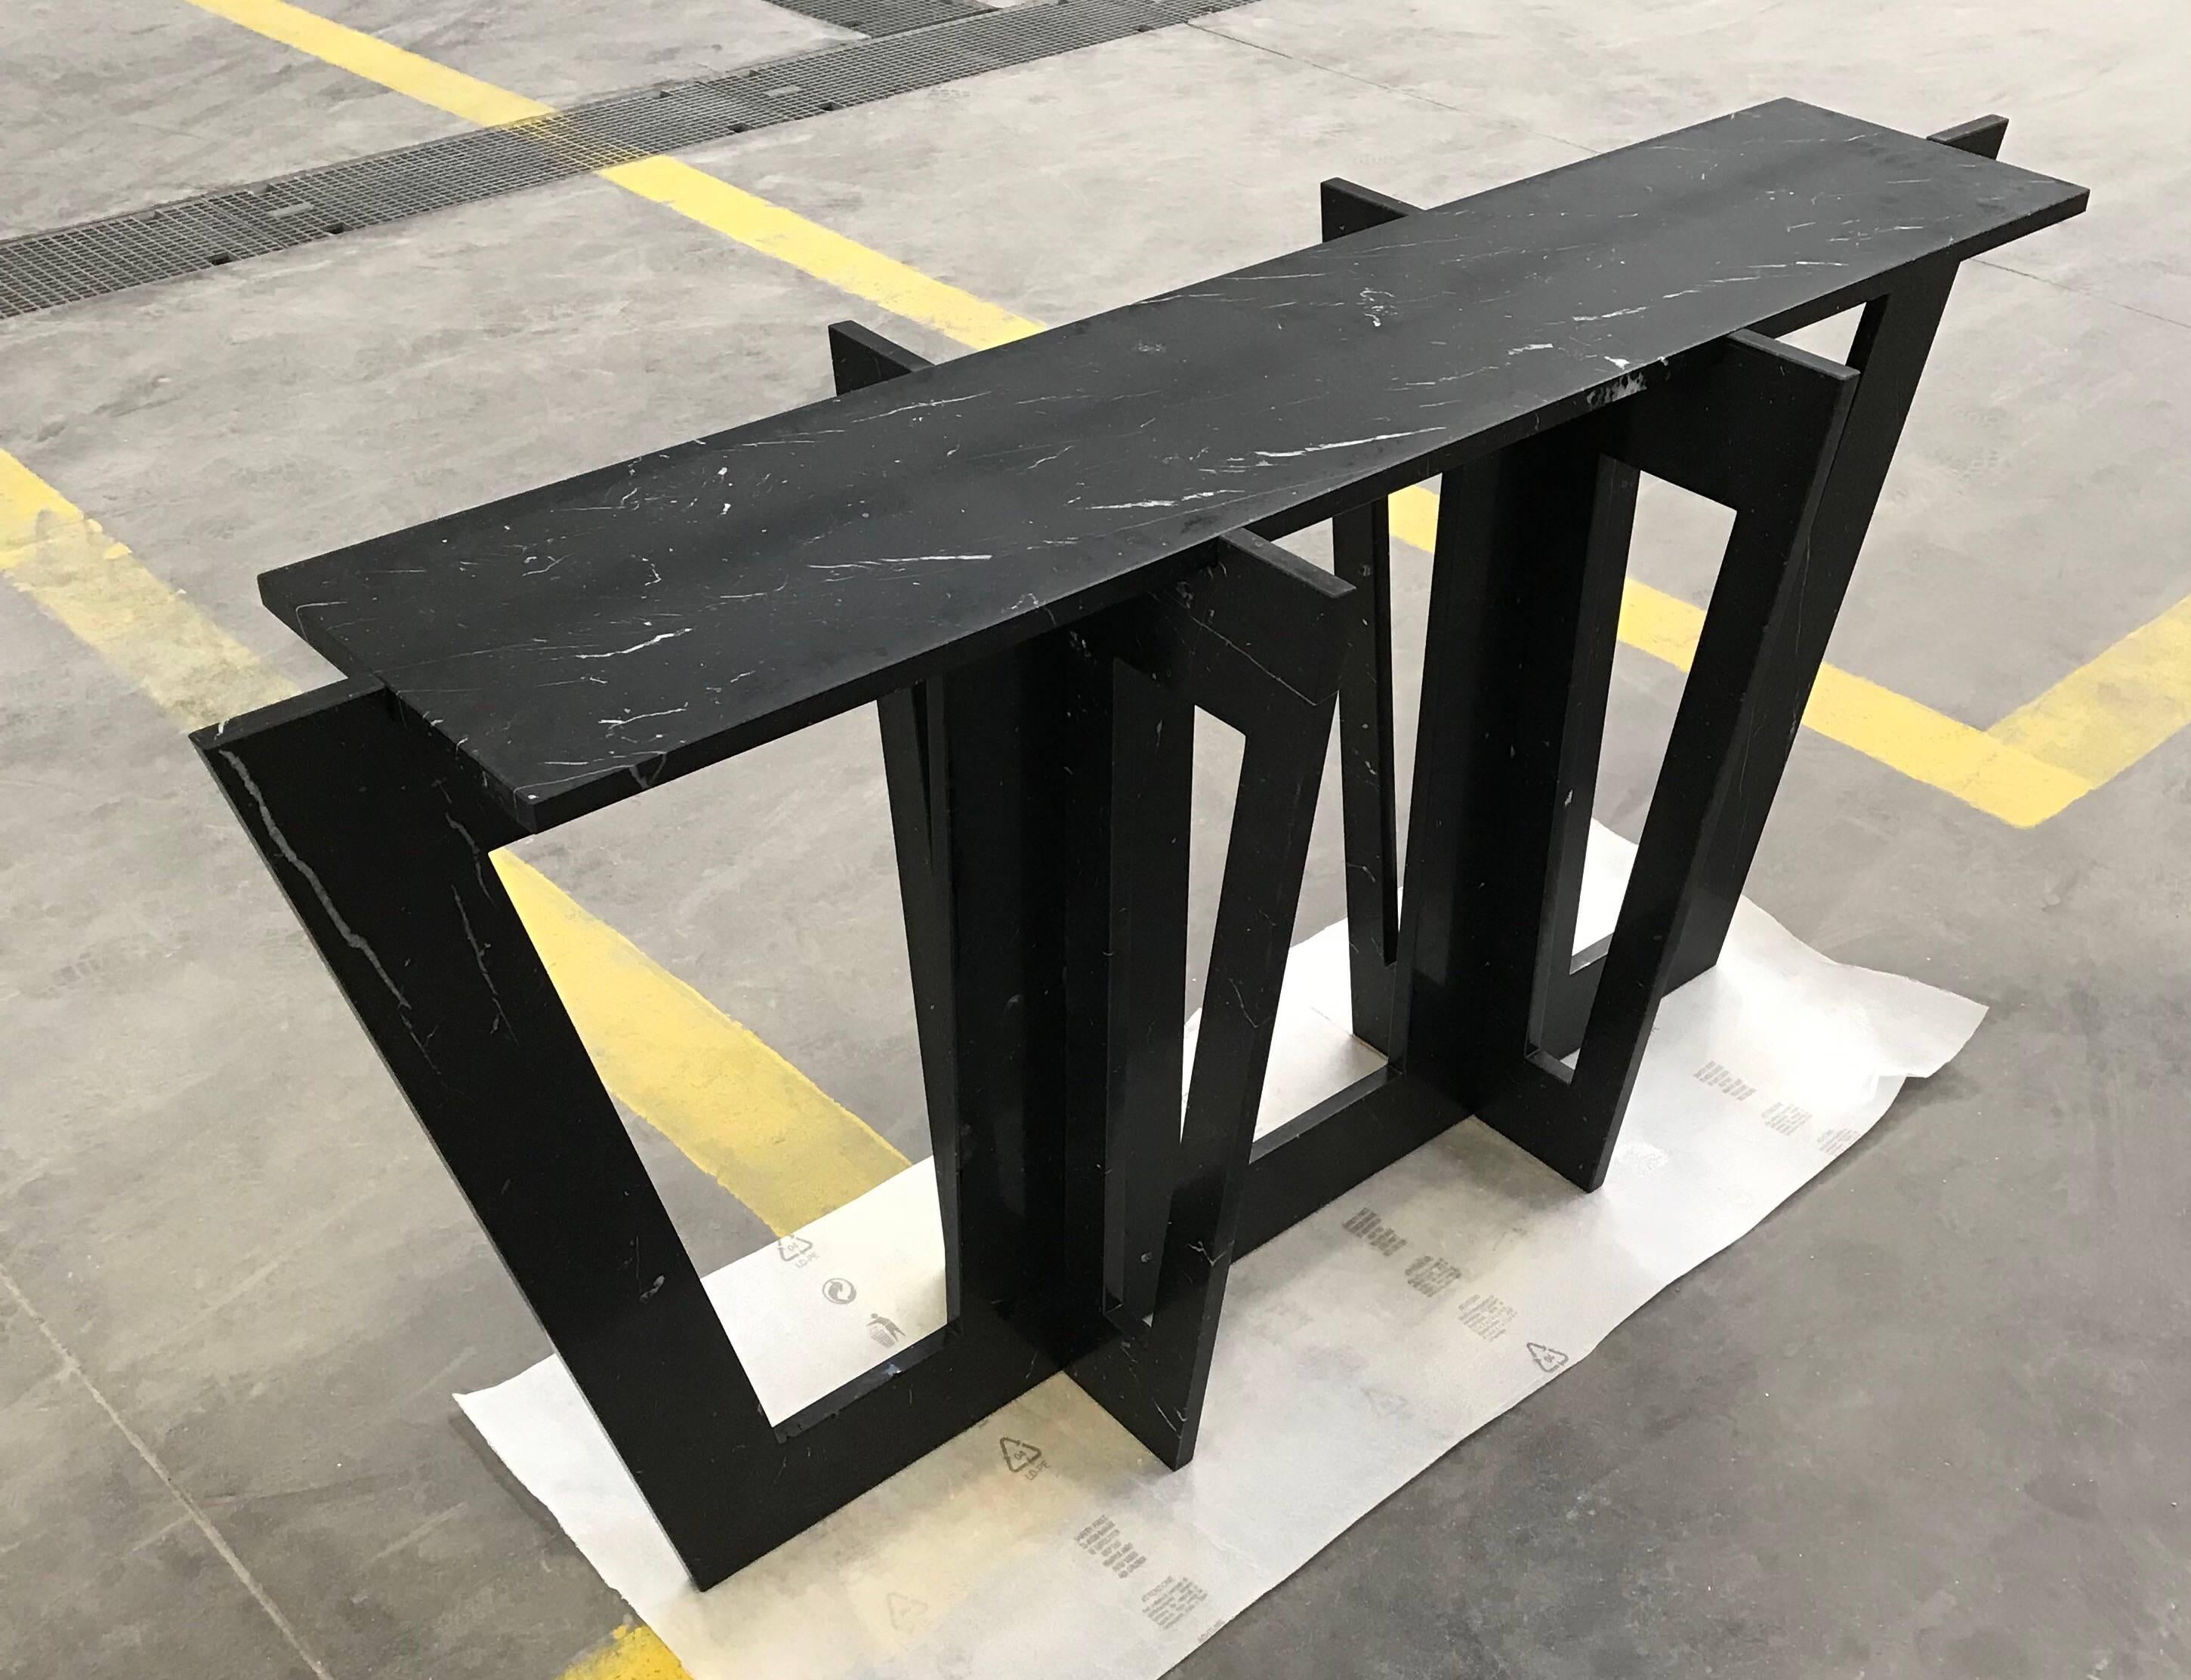 Console ou table de canapé en marbre noir Marquina de Massimo Mangiardi. Le plateau rectangulaire en marbre noir repose sur trois pièces de marbre noir à cadre ouvert, empilées les unes sur les autres, qui forment le cadre. Disponible également en